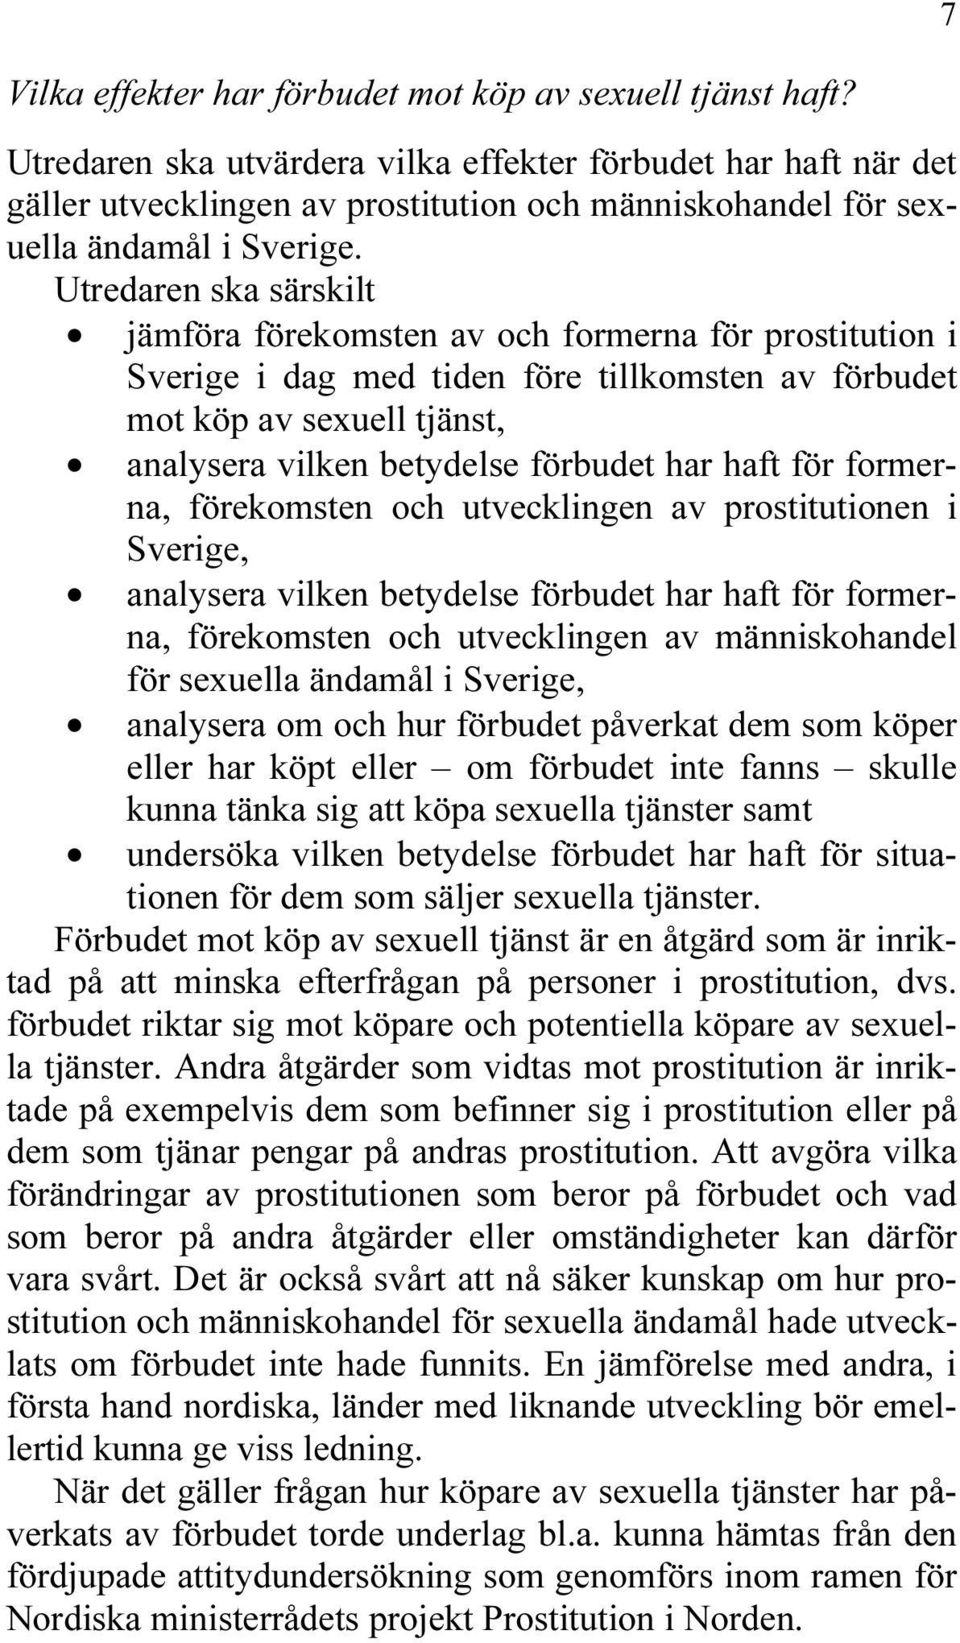 Utredaren ska särskilt jämföra förekomsten av och formerna för prostitution i Sverige i dag med tiden före tillkomsten av förbudet mot köp av sexuell tjänst, analysera vilken betydelse förbudet har